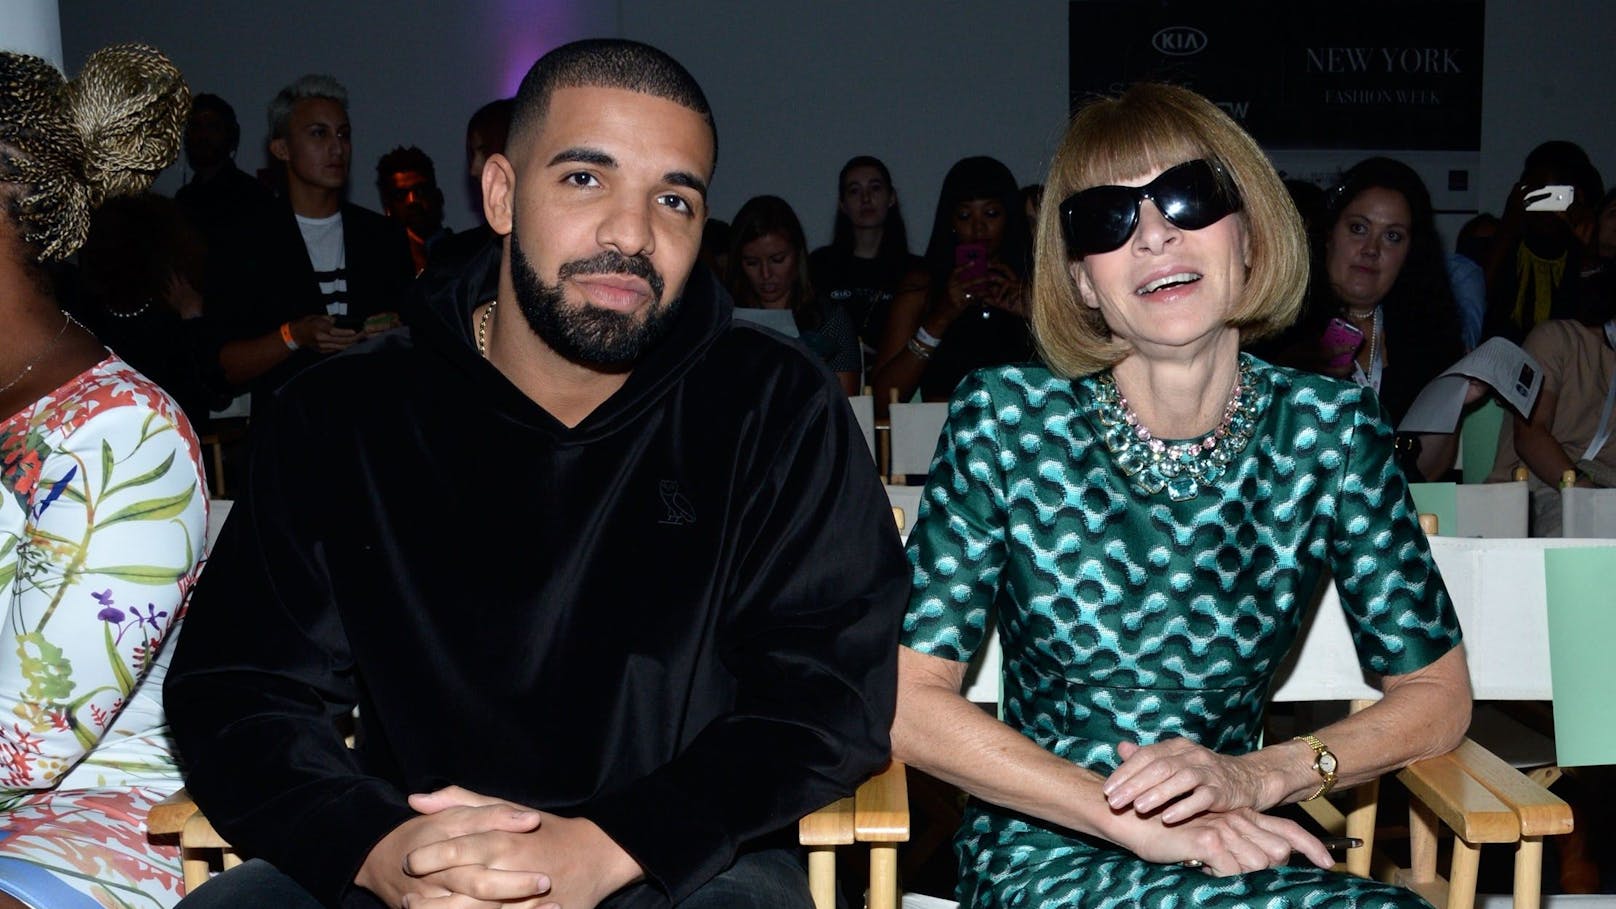 Die "Vogue" verklagt Drake: Bei dieser Fashion Show vor ein paar Jahren war "Vogue"-Chefin Anna Wintour noch gut auf Drake zu sprechen.